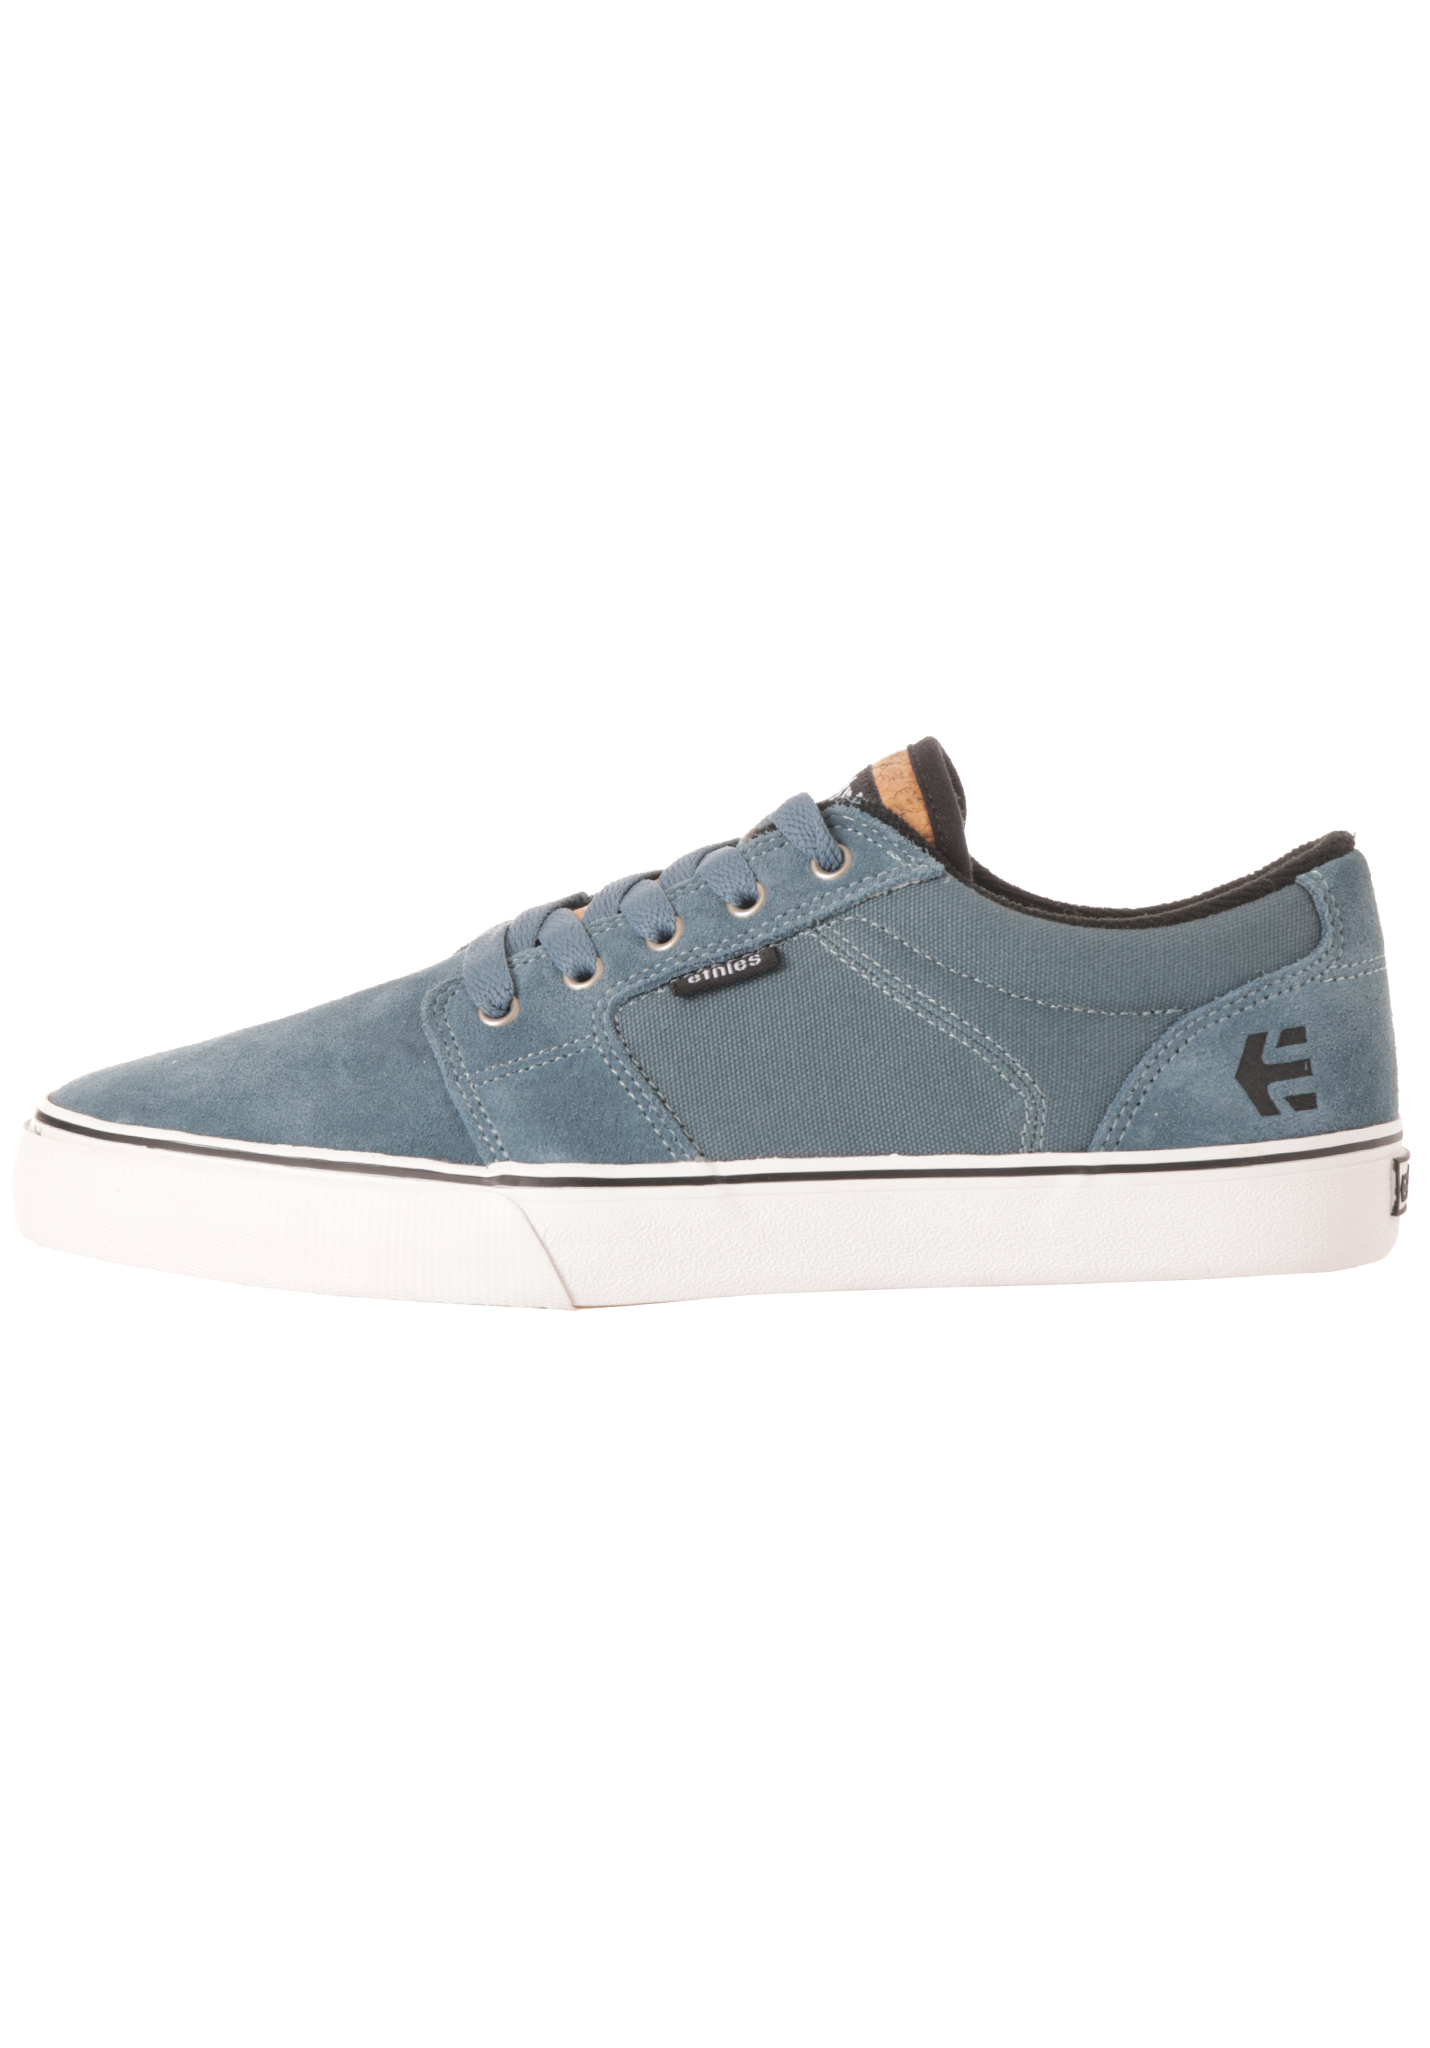 Etnies Barge LS Sneaker blau schwarz 41,5